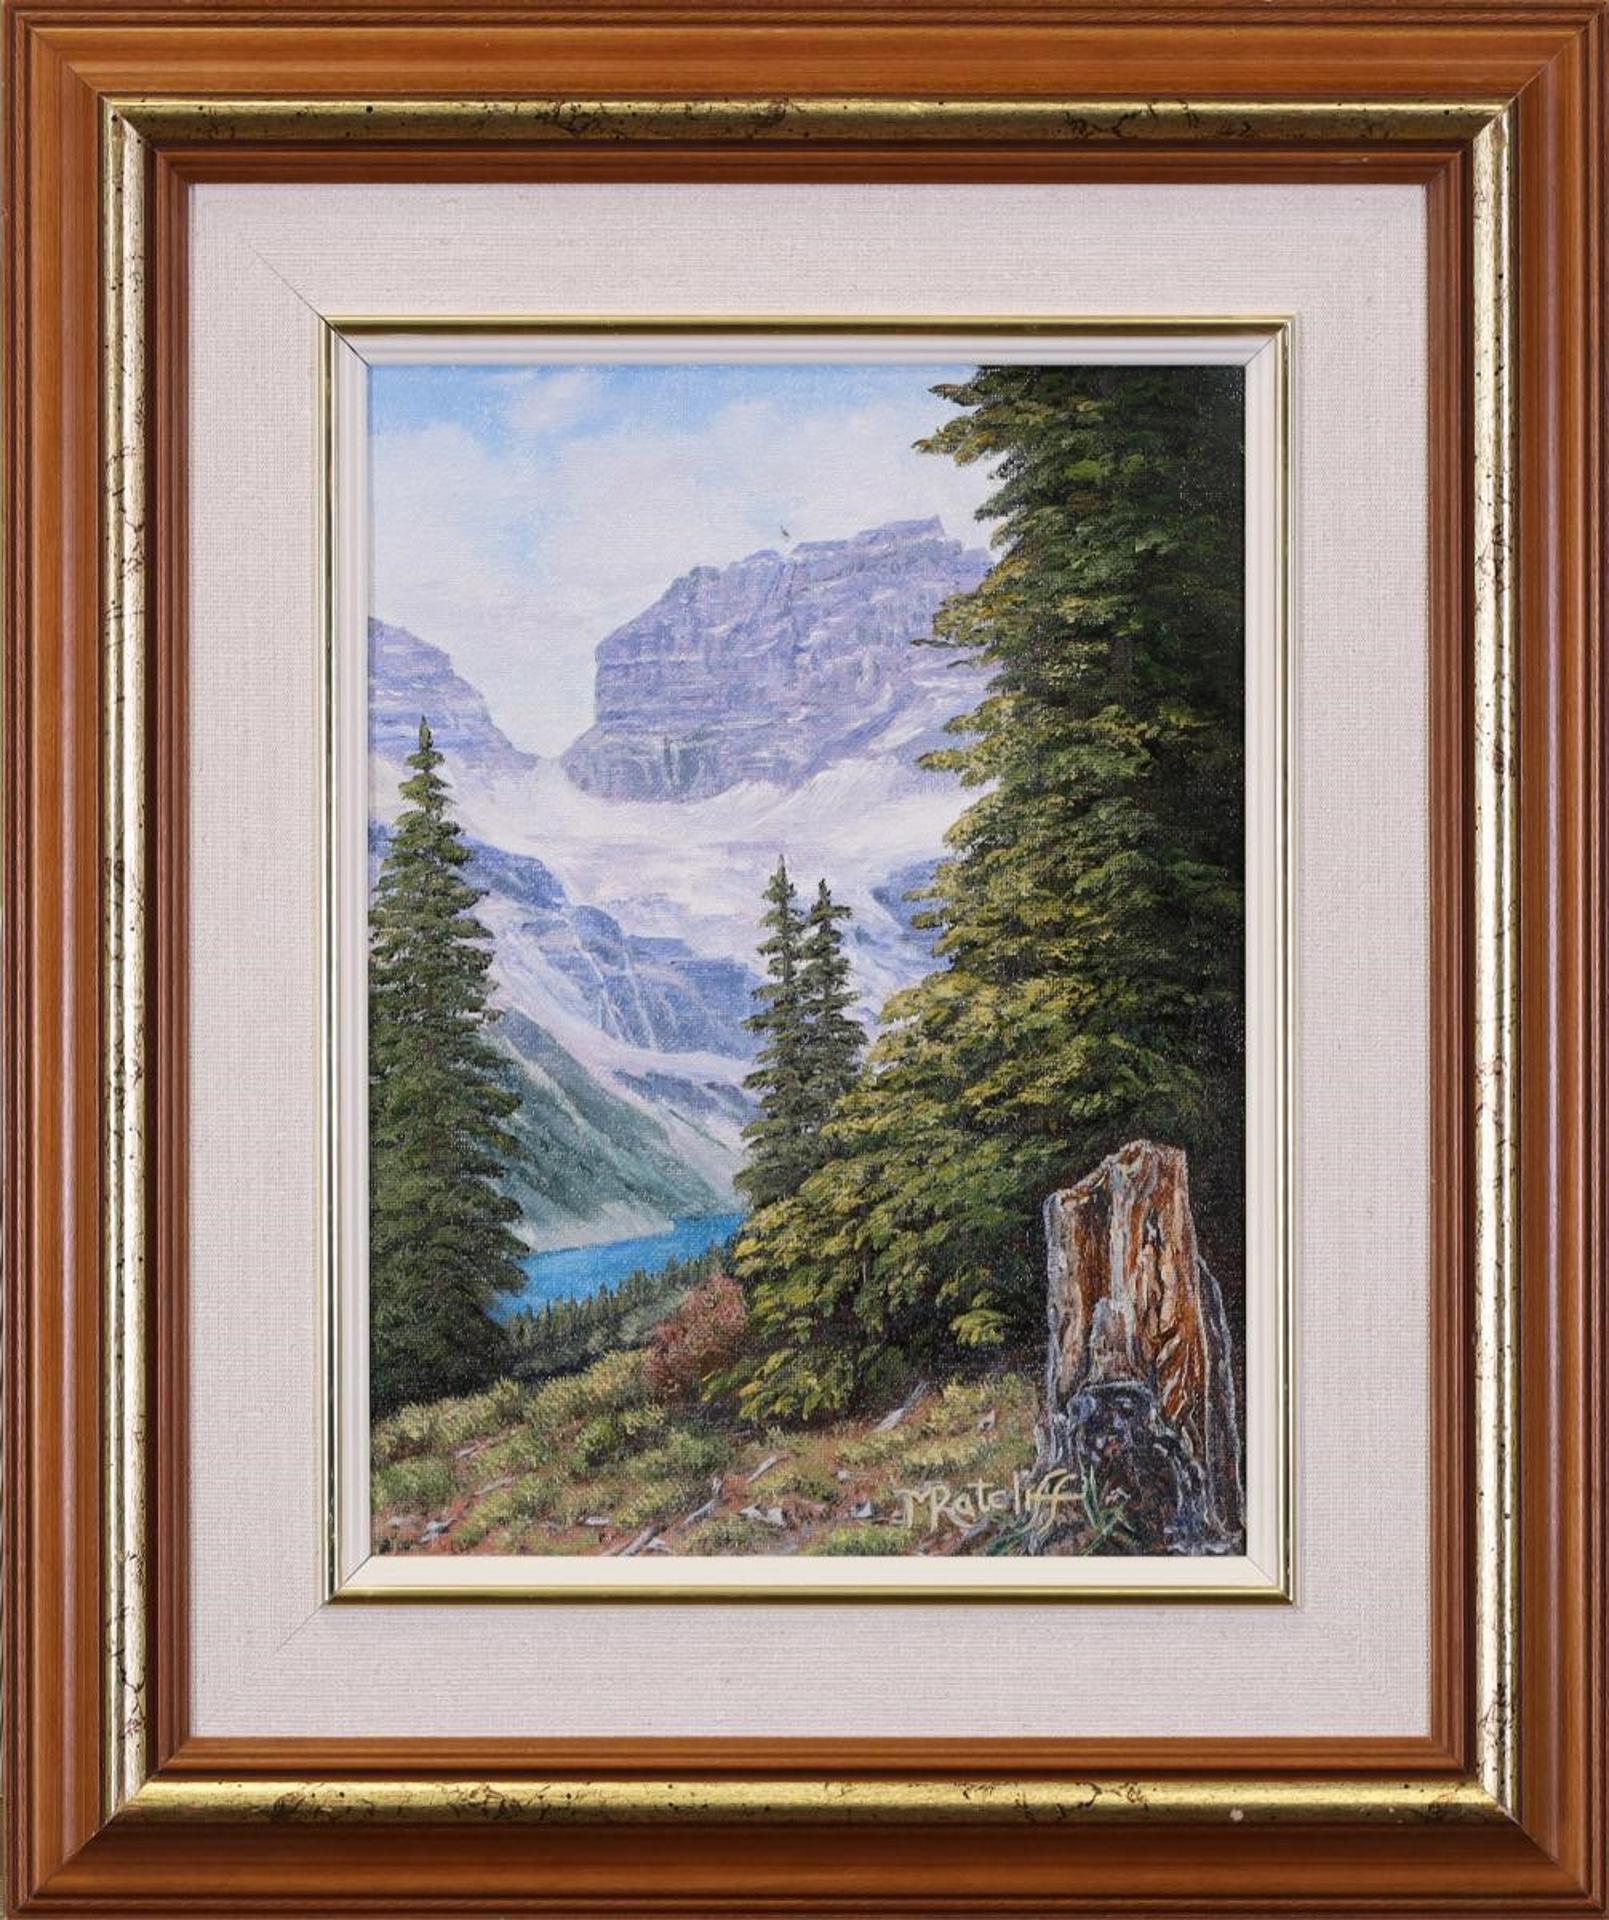 Melva Ratcliff - “Wonder Pass, Banff National Park”